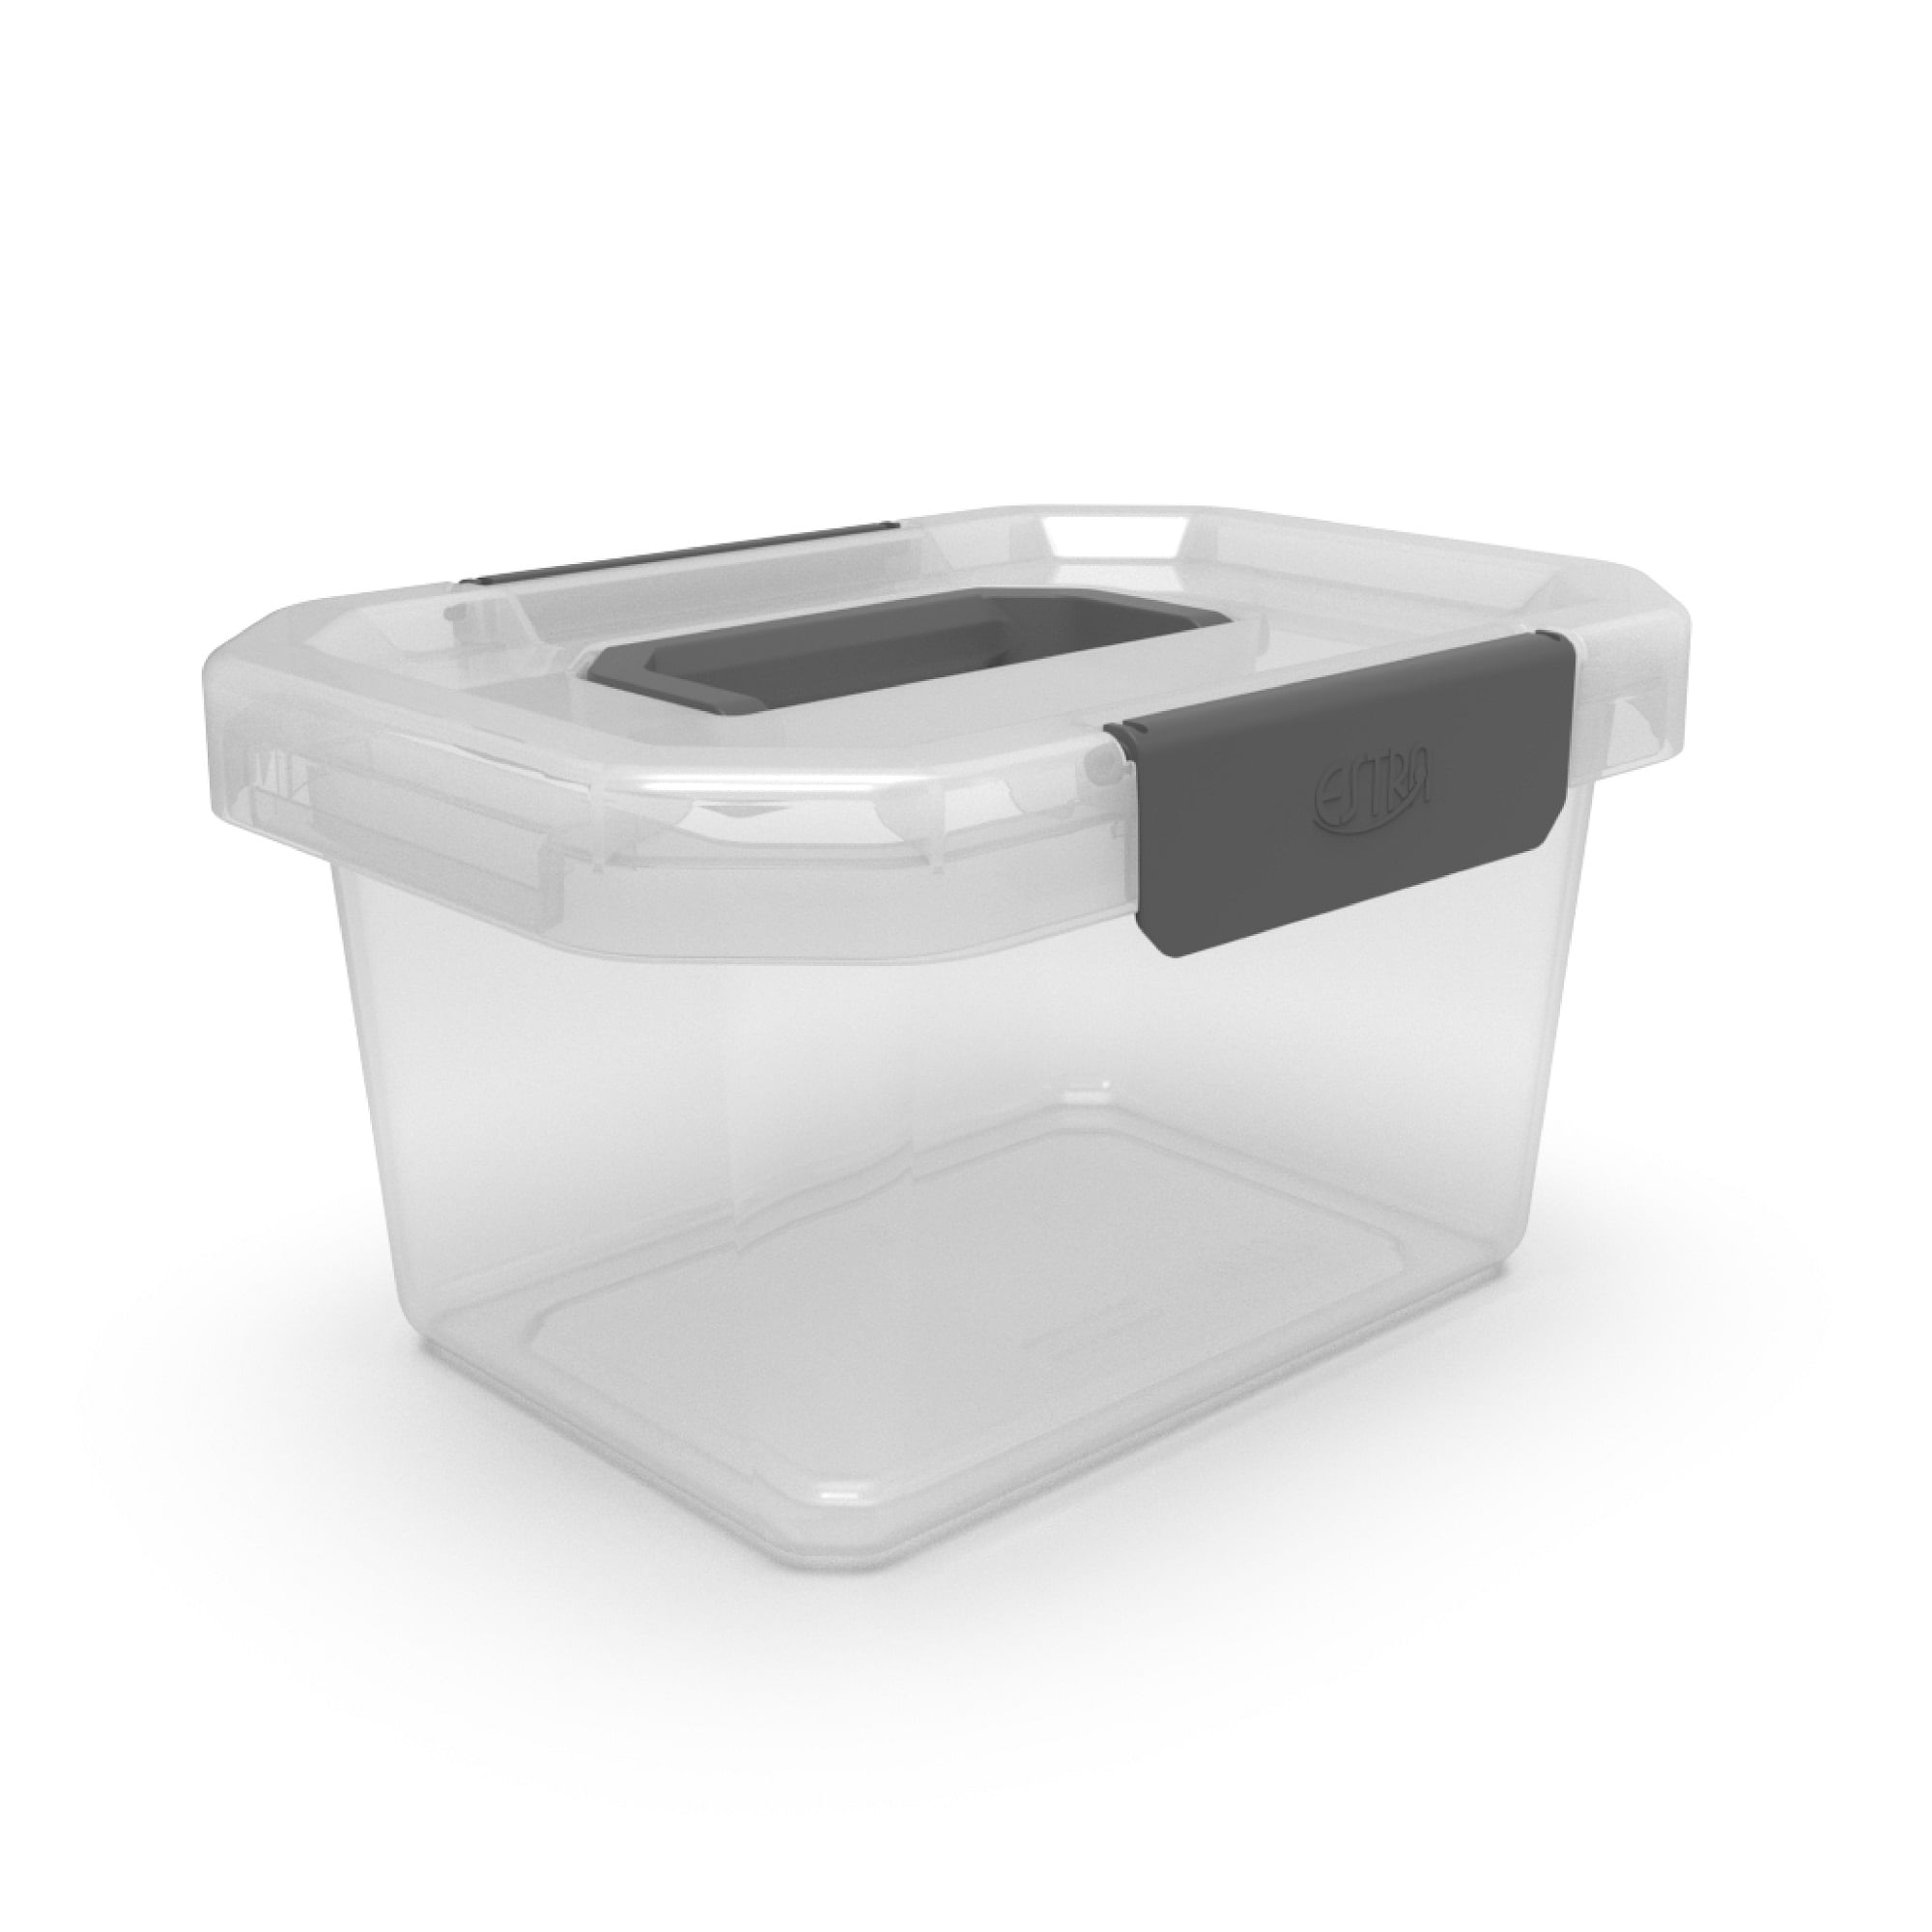 Caja plástico 15L vajillas - Accesorios camping